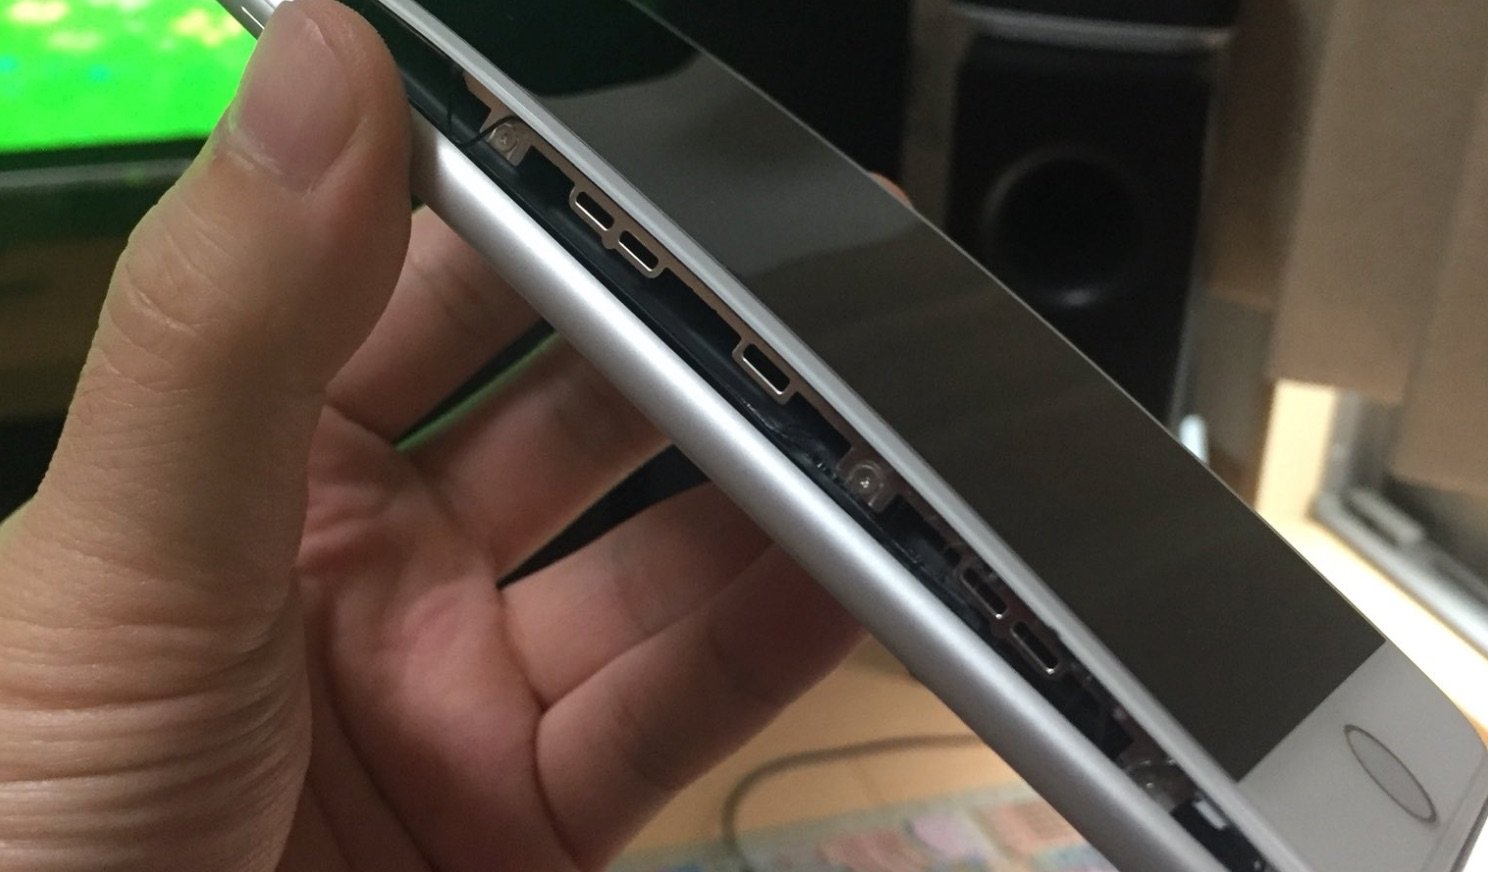 Apple iPhone 8 Plus: Mehr Meldungen über aufblähendes Display 1